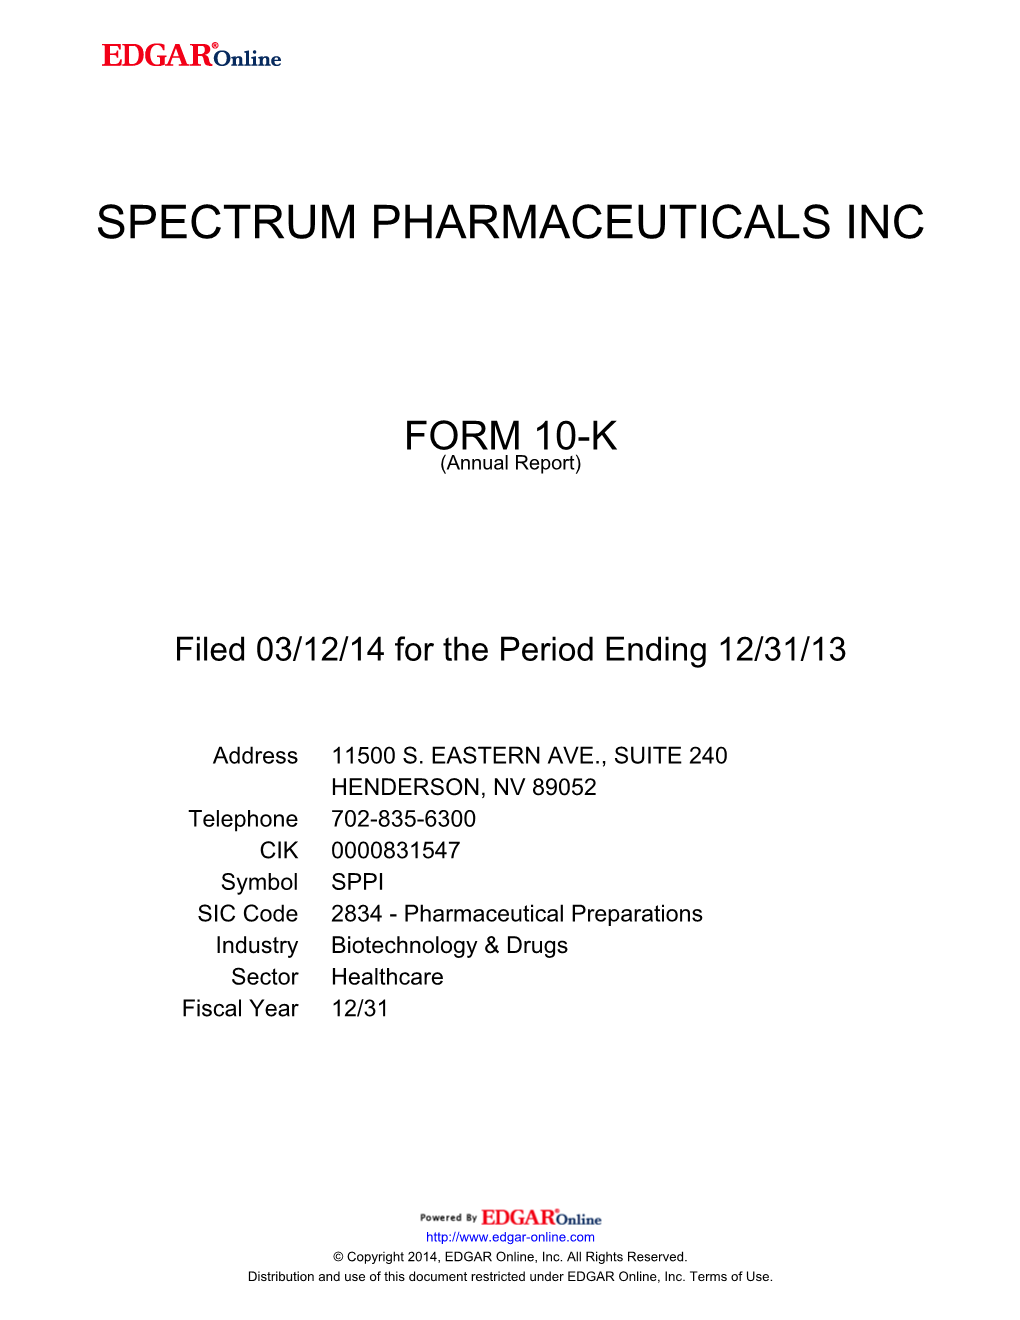 Spectrum Pharmaceuticals Inc